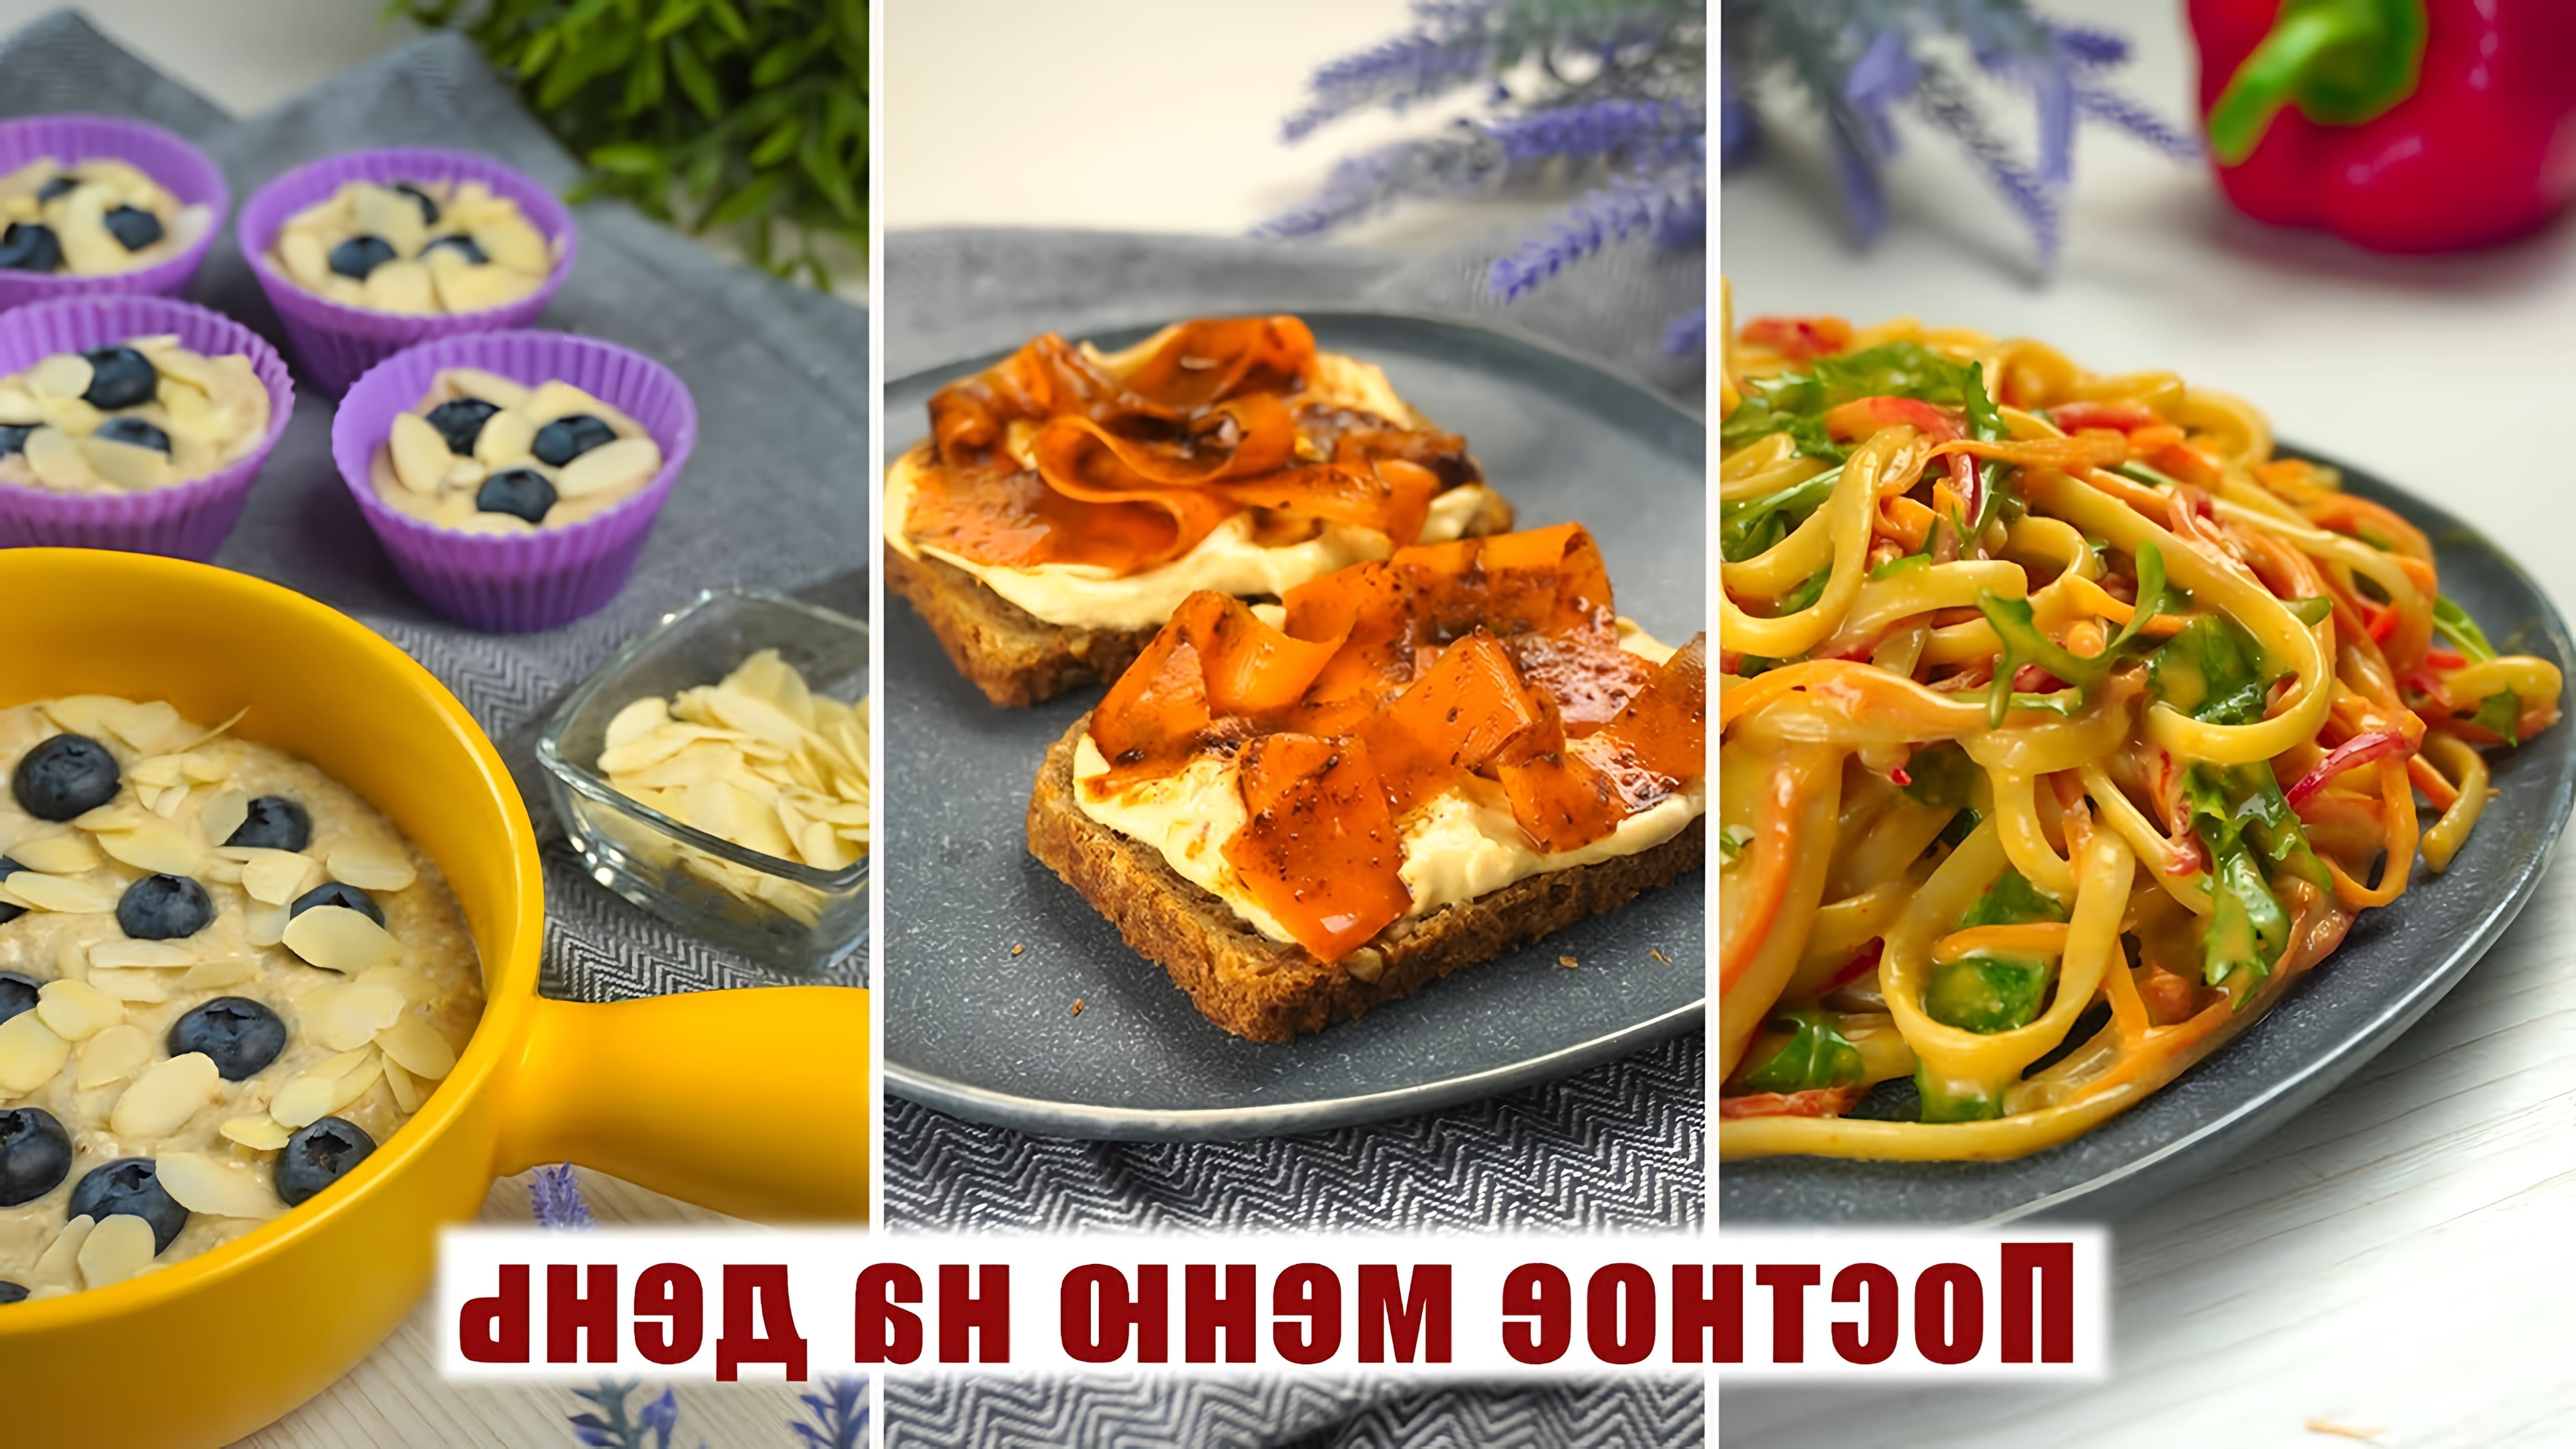 В этом видео Катя Паприка представляет три постных блюда на каждый день: овсяно-банановый пирог, веганскую арахисовую радужную пасту и бутерброды с морковью и красной копченой рыбкой